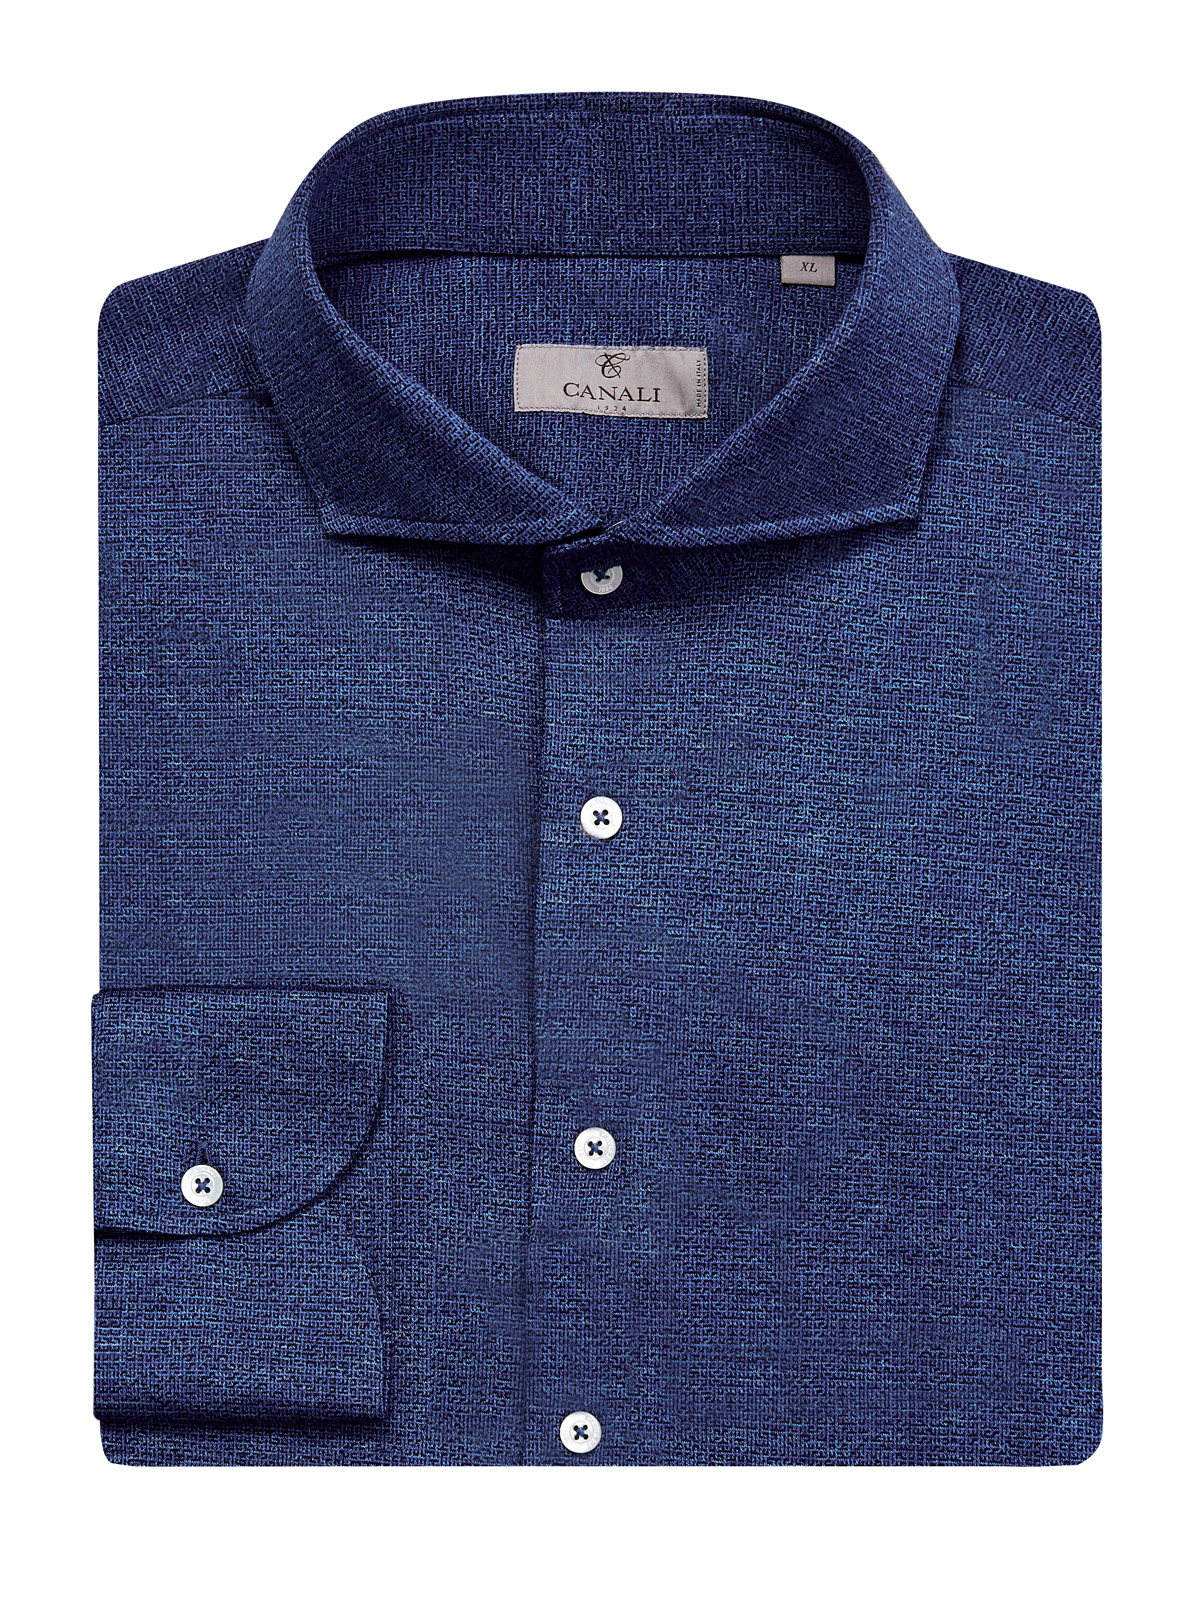 Хлопковая рубашка в стиле casual с жаккардовым принтом CANALI, цвет синий, размер 54;56;52 - фото 1